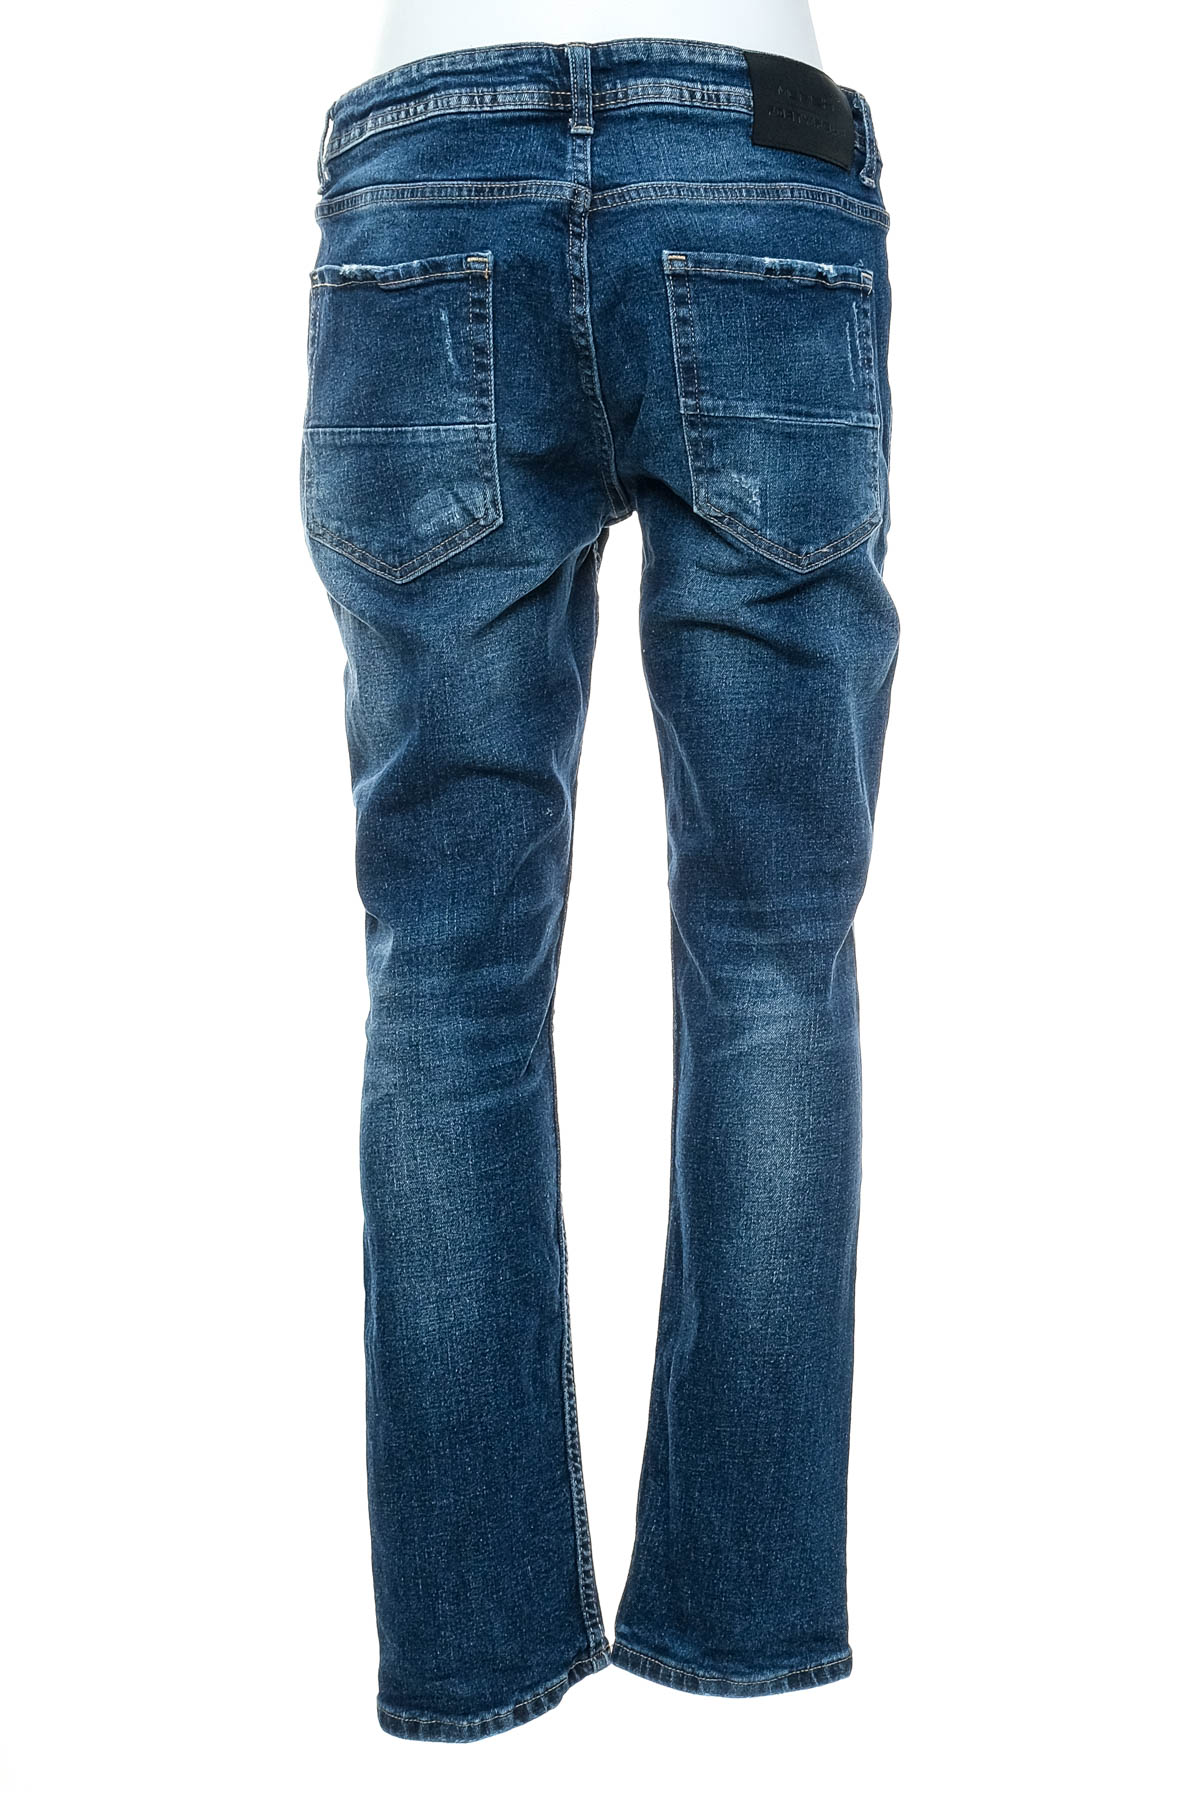 Men's jeans - Merish - 1